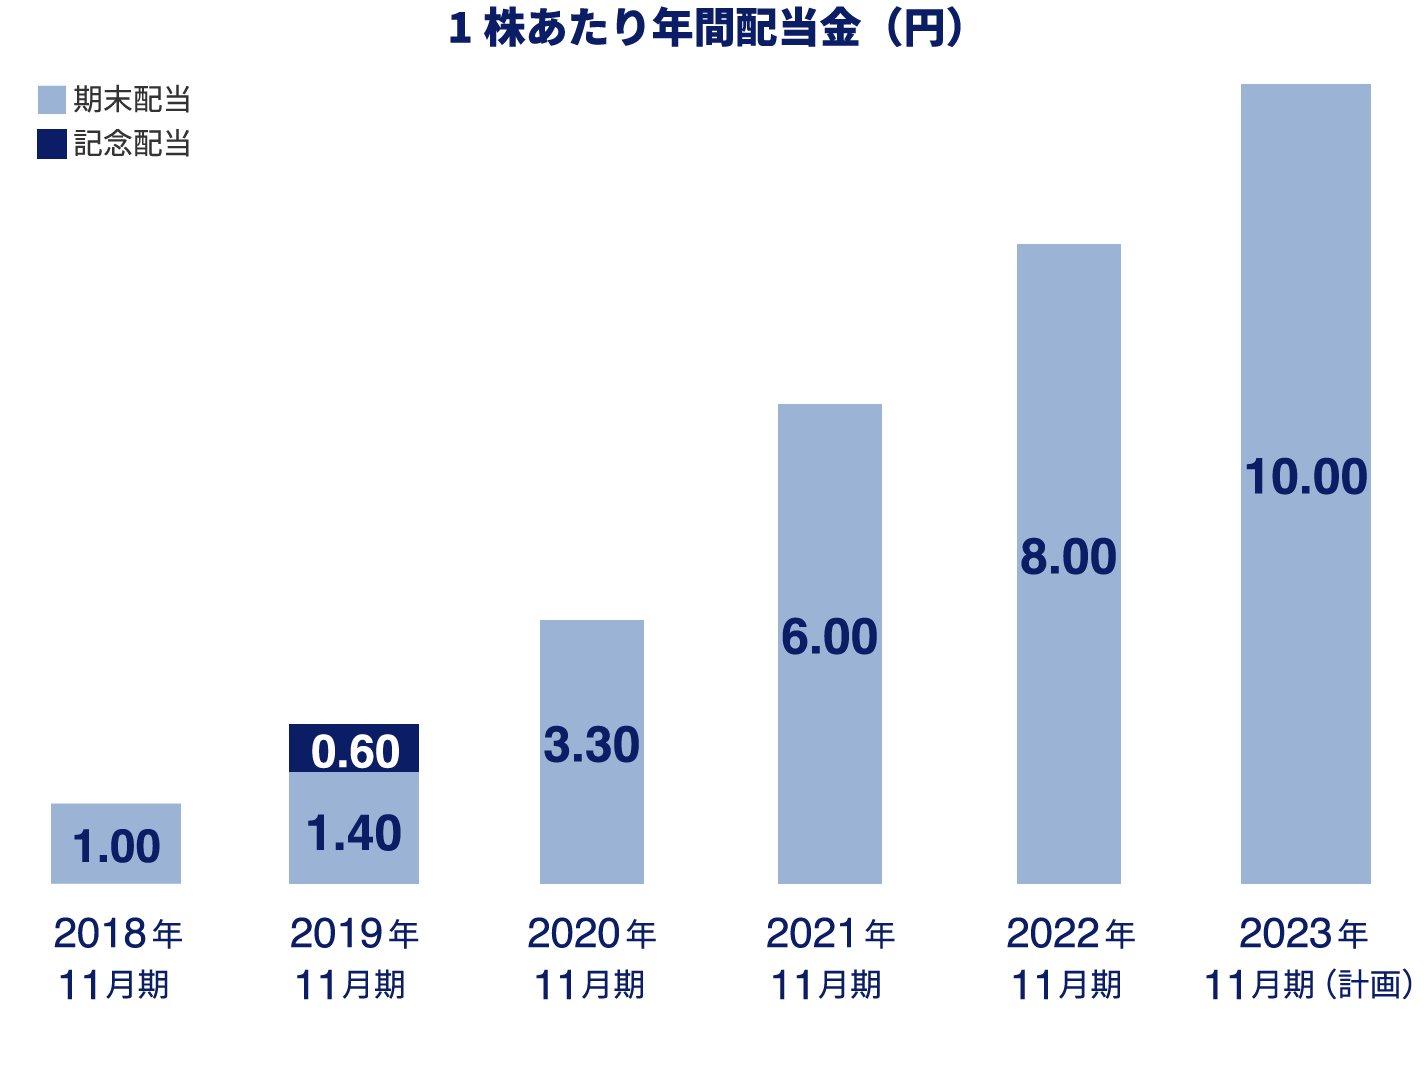 1株あたり年間配当金額(円)